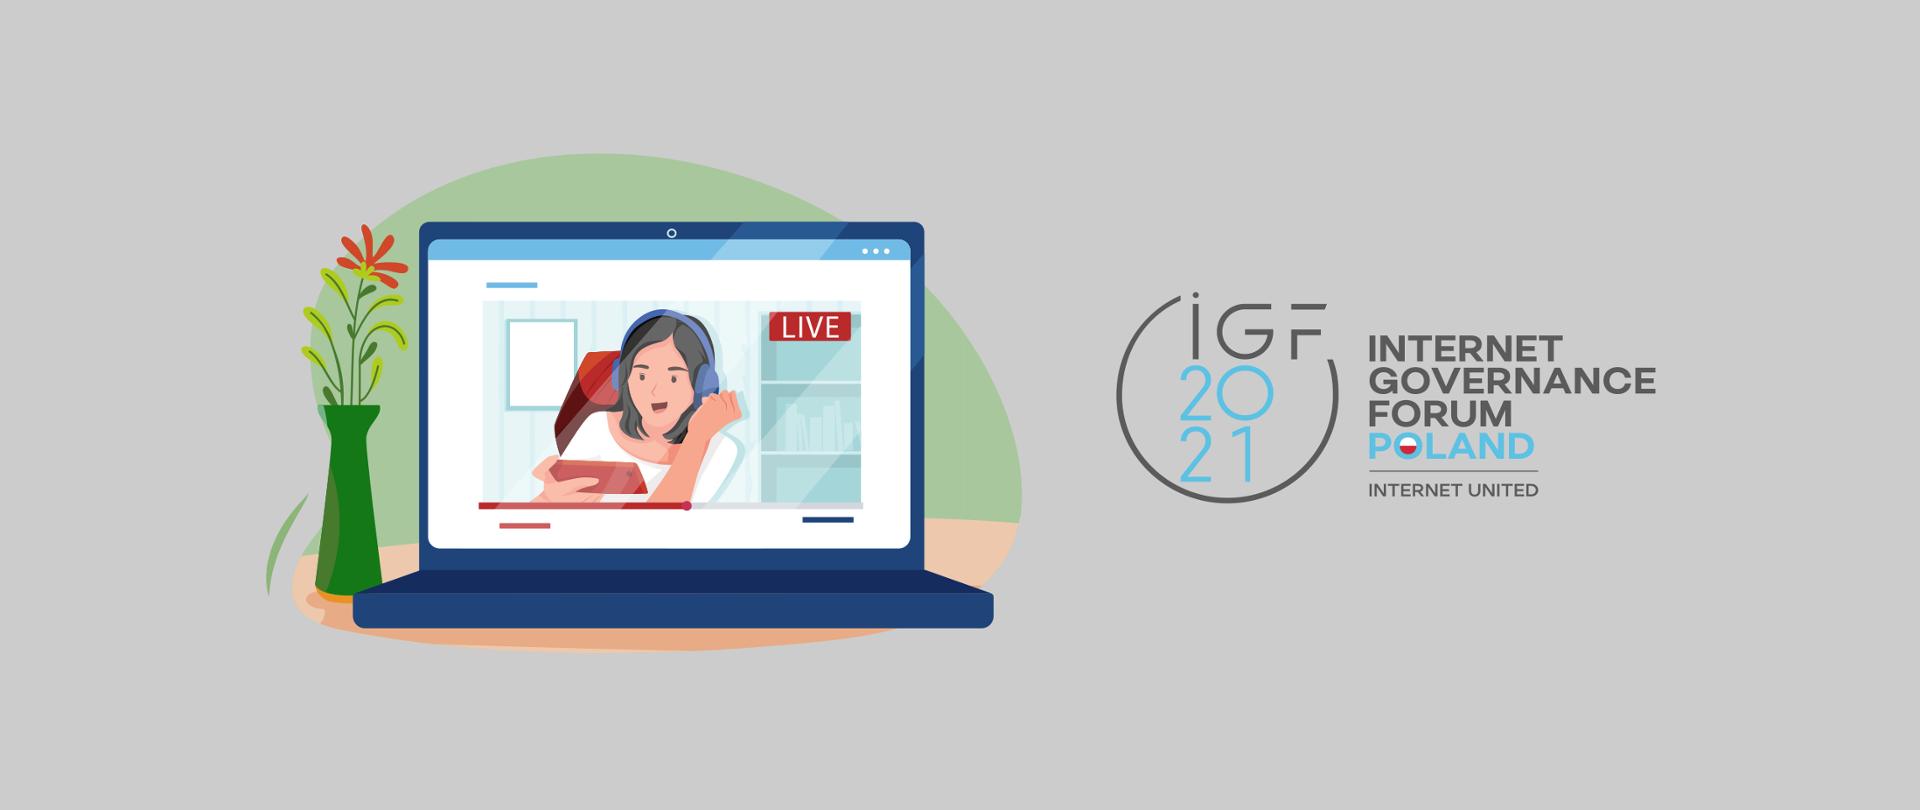 Grafika wektorowa na szarym tle. Z prawej strony granatowy laptop, na ekranie którego widać młodą dziewczynę w słuchawkach biorącą udział w webinarze. Obok laptopa (z jego lewej strony) zielony wazon z kwiatkiem. Po prawej stronie grafiki logo IGF 2021 i tekst Internet Governace Forum Poland, Internet United.